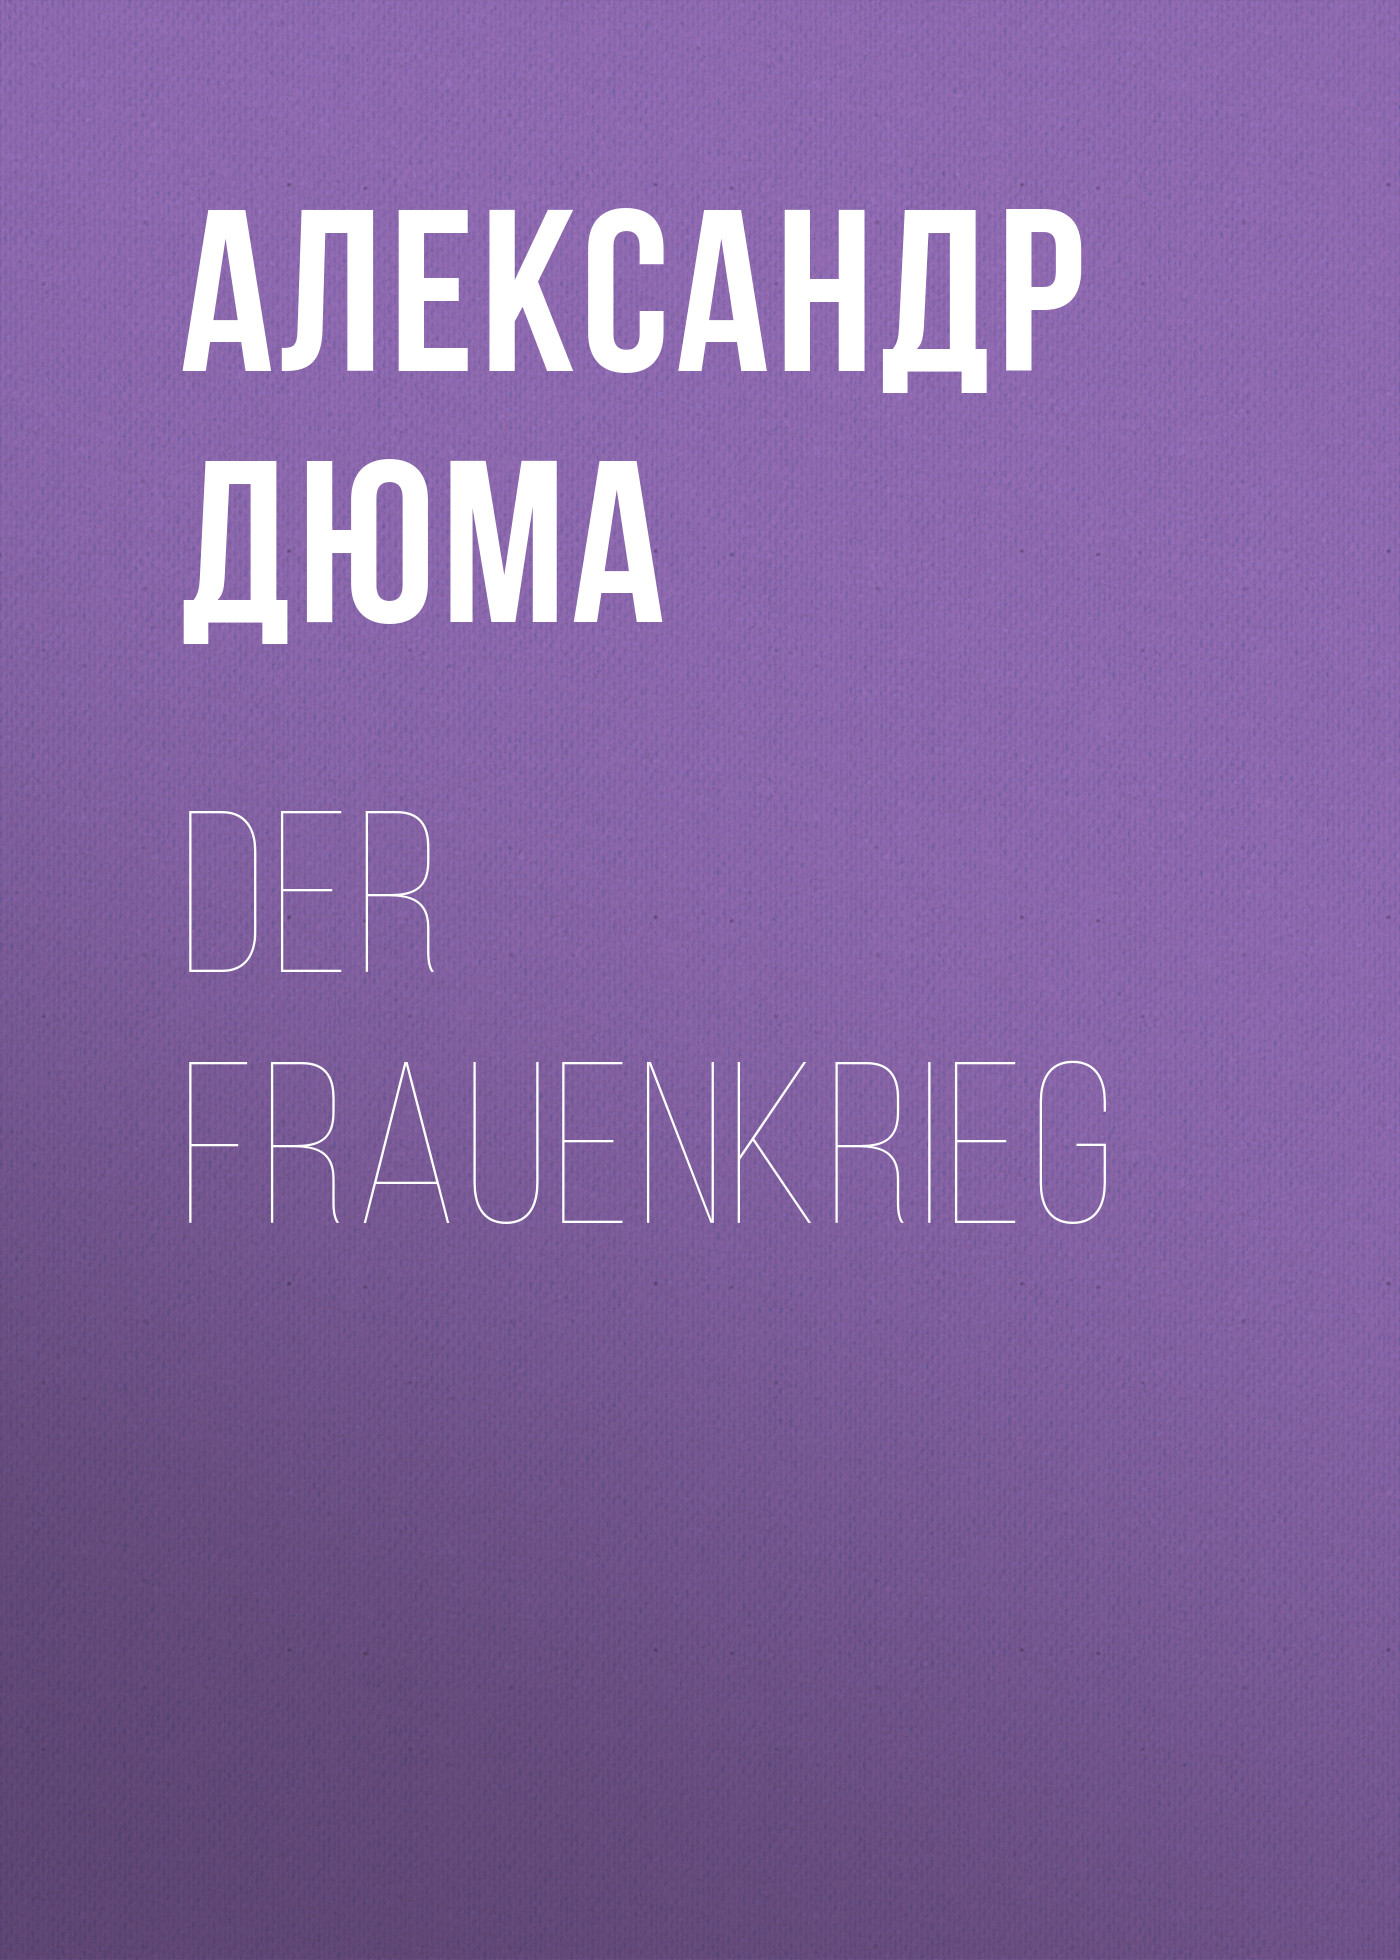 Книга Der Frauenkrieg из серии , созданная Alexandre Dumas der Ältere, может относится к жанру Зарубежная классика. Стоимость электронной книги Der Frauenkrieg с идентификатором 48632436 составляет 0 руб.